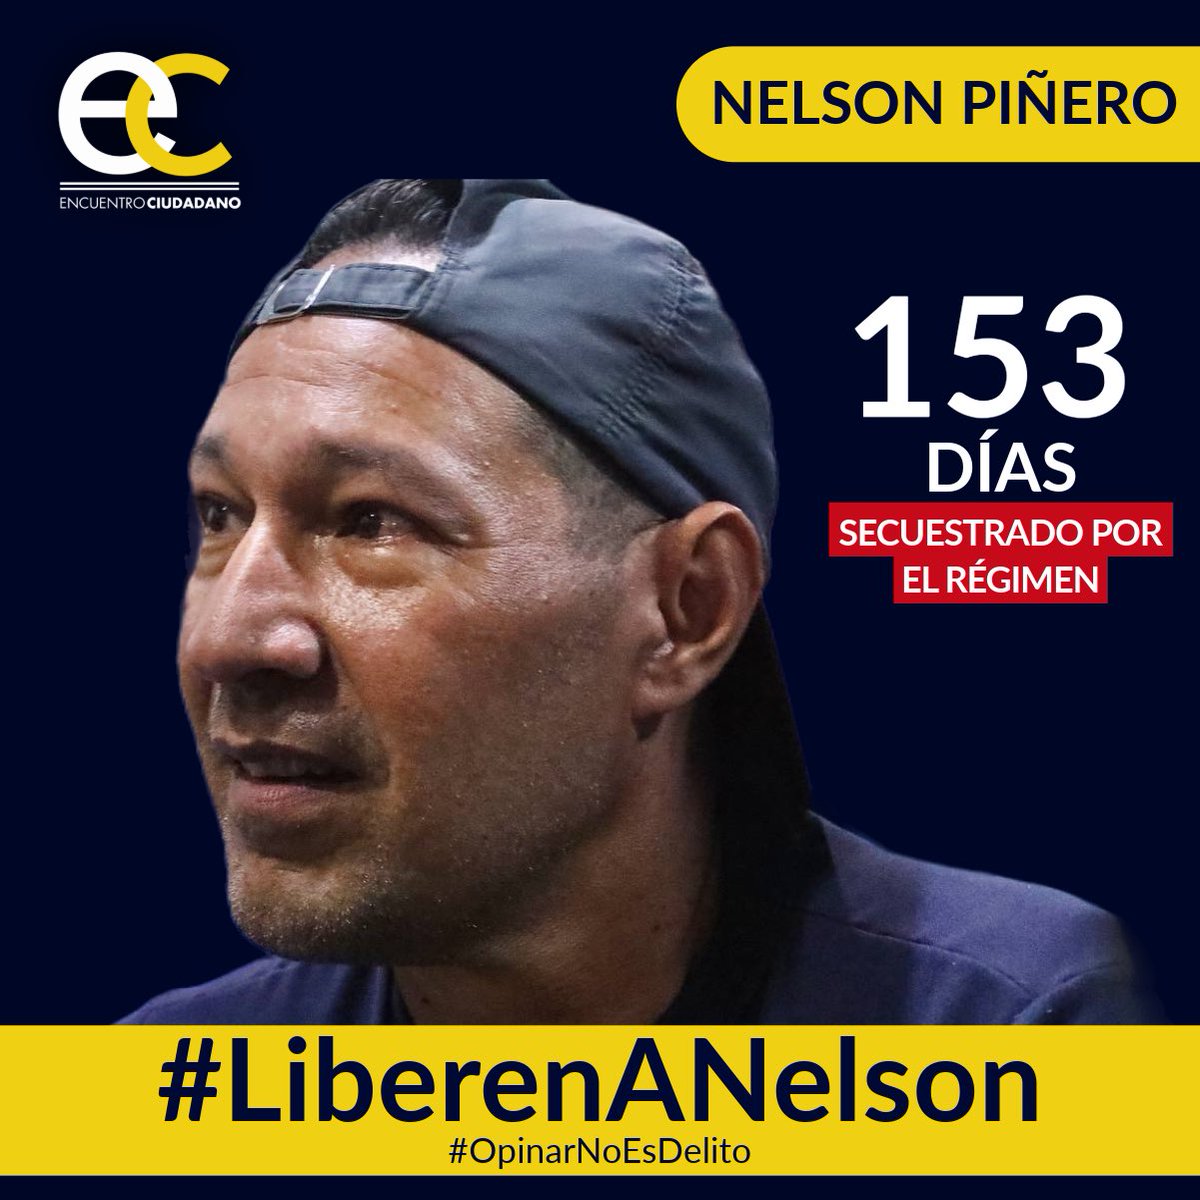 #22Abr | Nelson Piñero, activista de #EncuentroCiudadano, lleva 153 días secuestrado por el régimen solo por emitir sus opiniones en redes sociales.

#OpinarNoEsDelito y por eso exigimos su liberación inmediata.

#LiberenANelson 
#LiberenALosPresosPolíticos